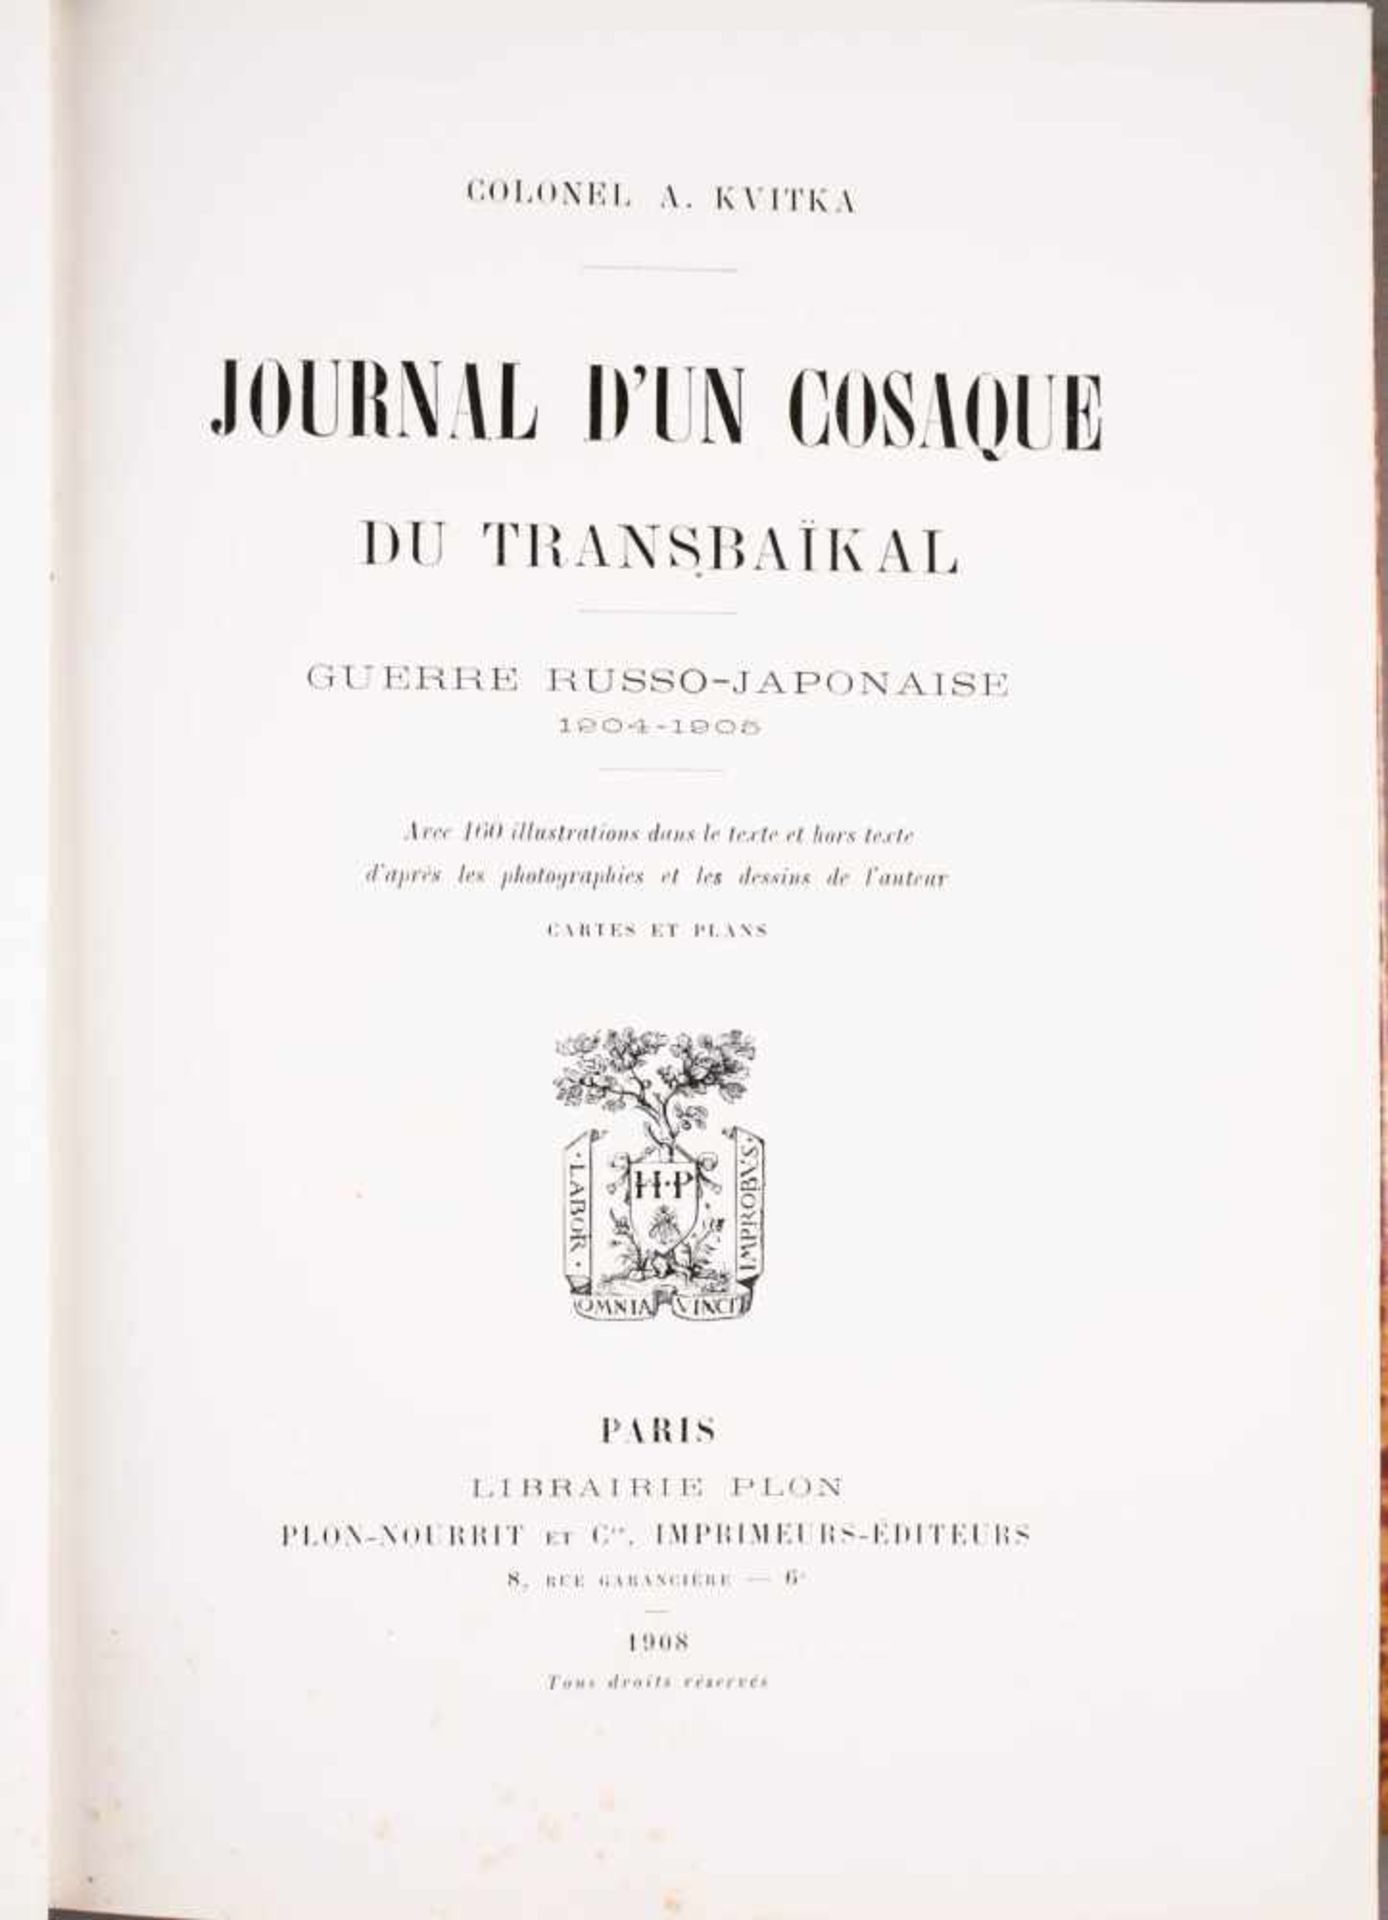 GRAFIKZwei französischsprachige Bücher Paris, 1892 und 1908 Gebundene Ausgaben mit schwarz-weiß - Bild 3 aus 3